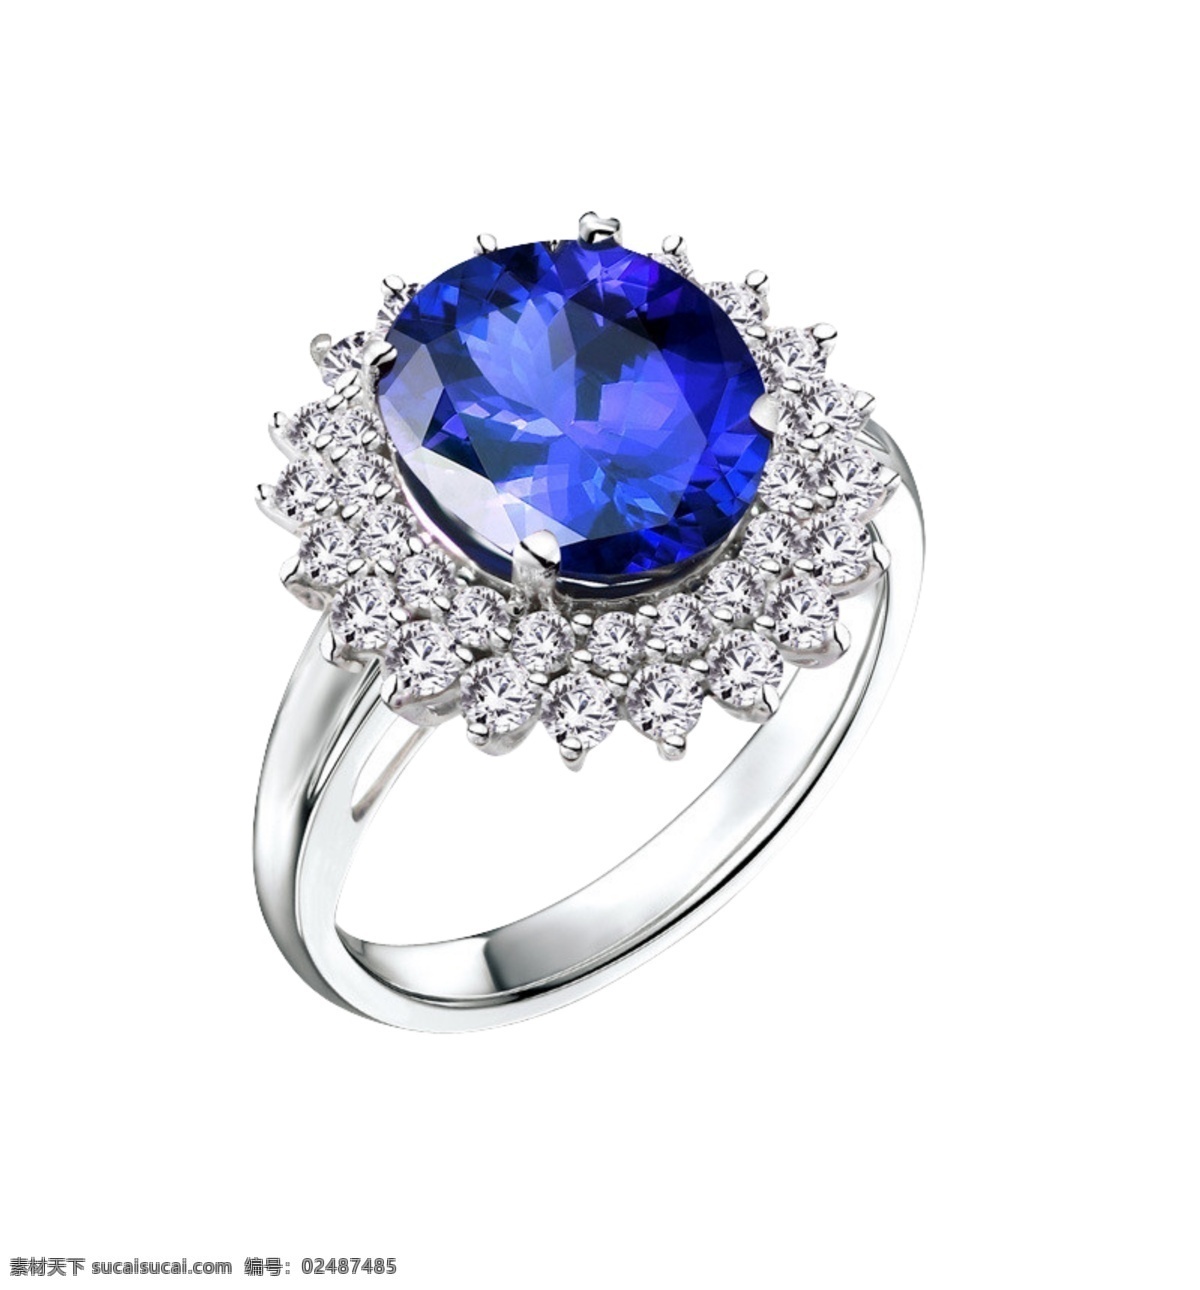 蓝宝石戒指 彩宝免费下载 彩宝 戒指 蓝宝石 钻石 坦桑石 矢量图 其他矢量图